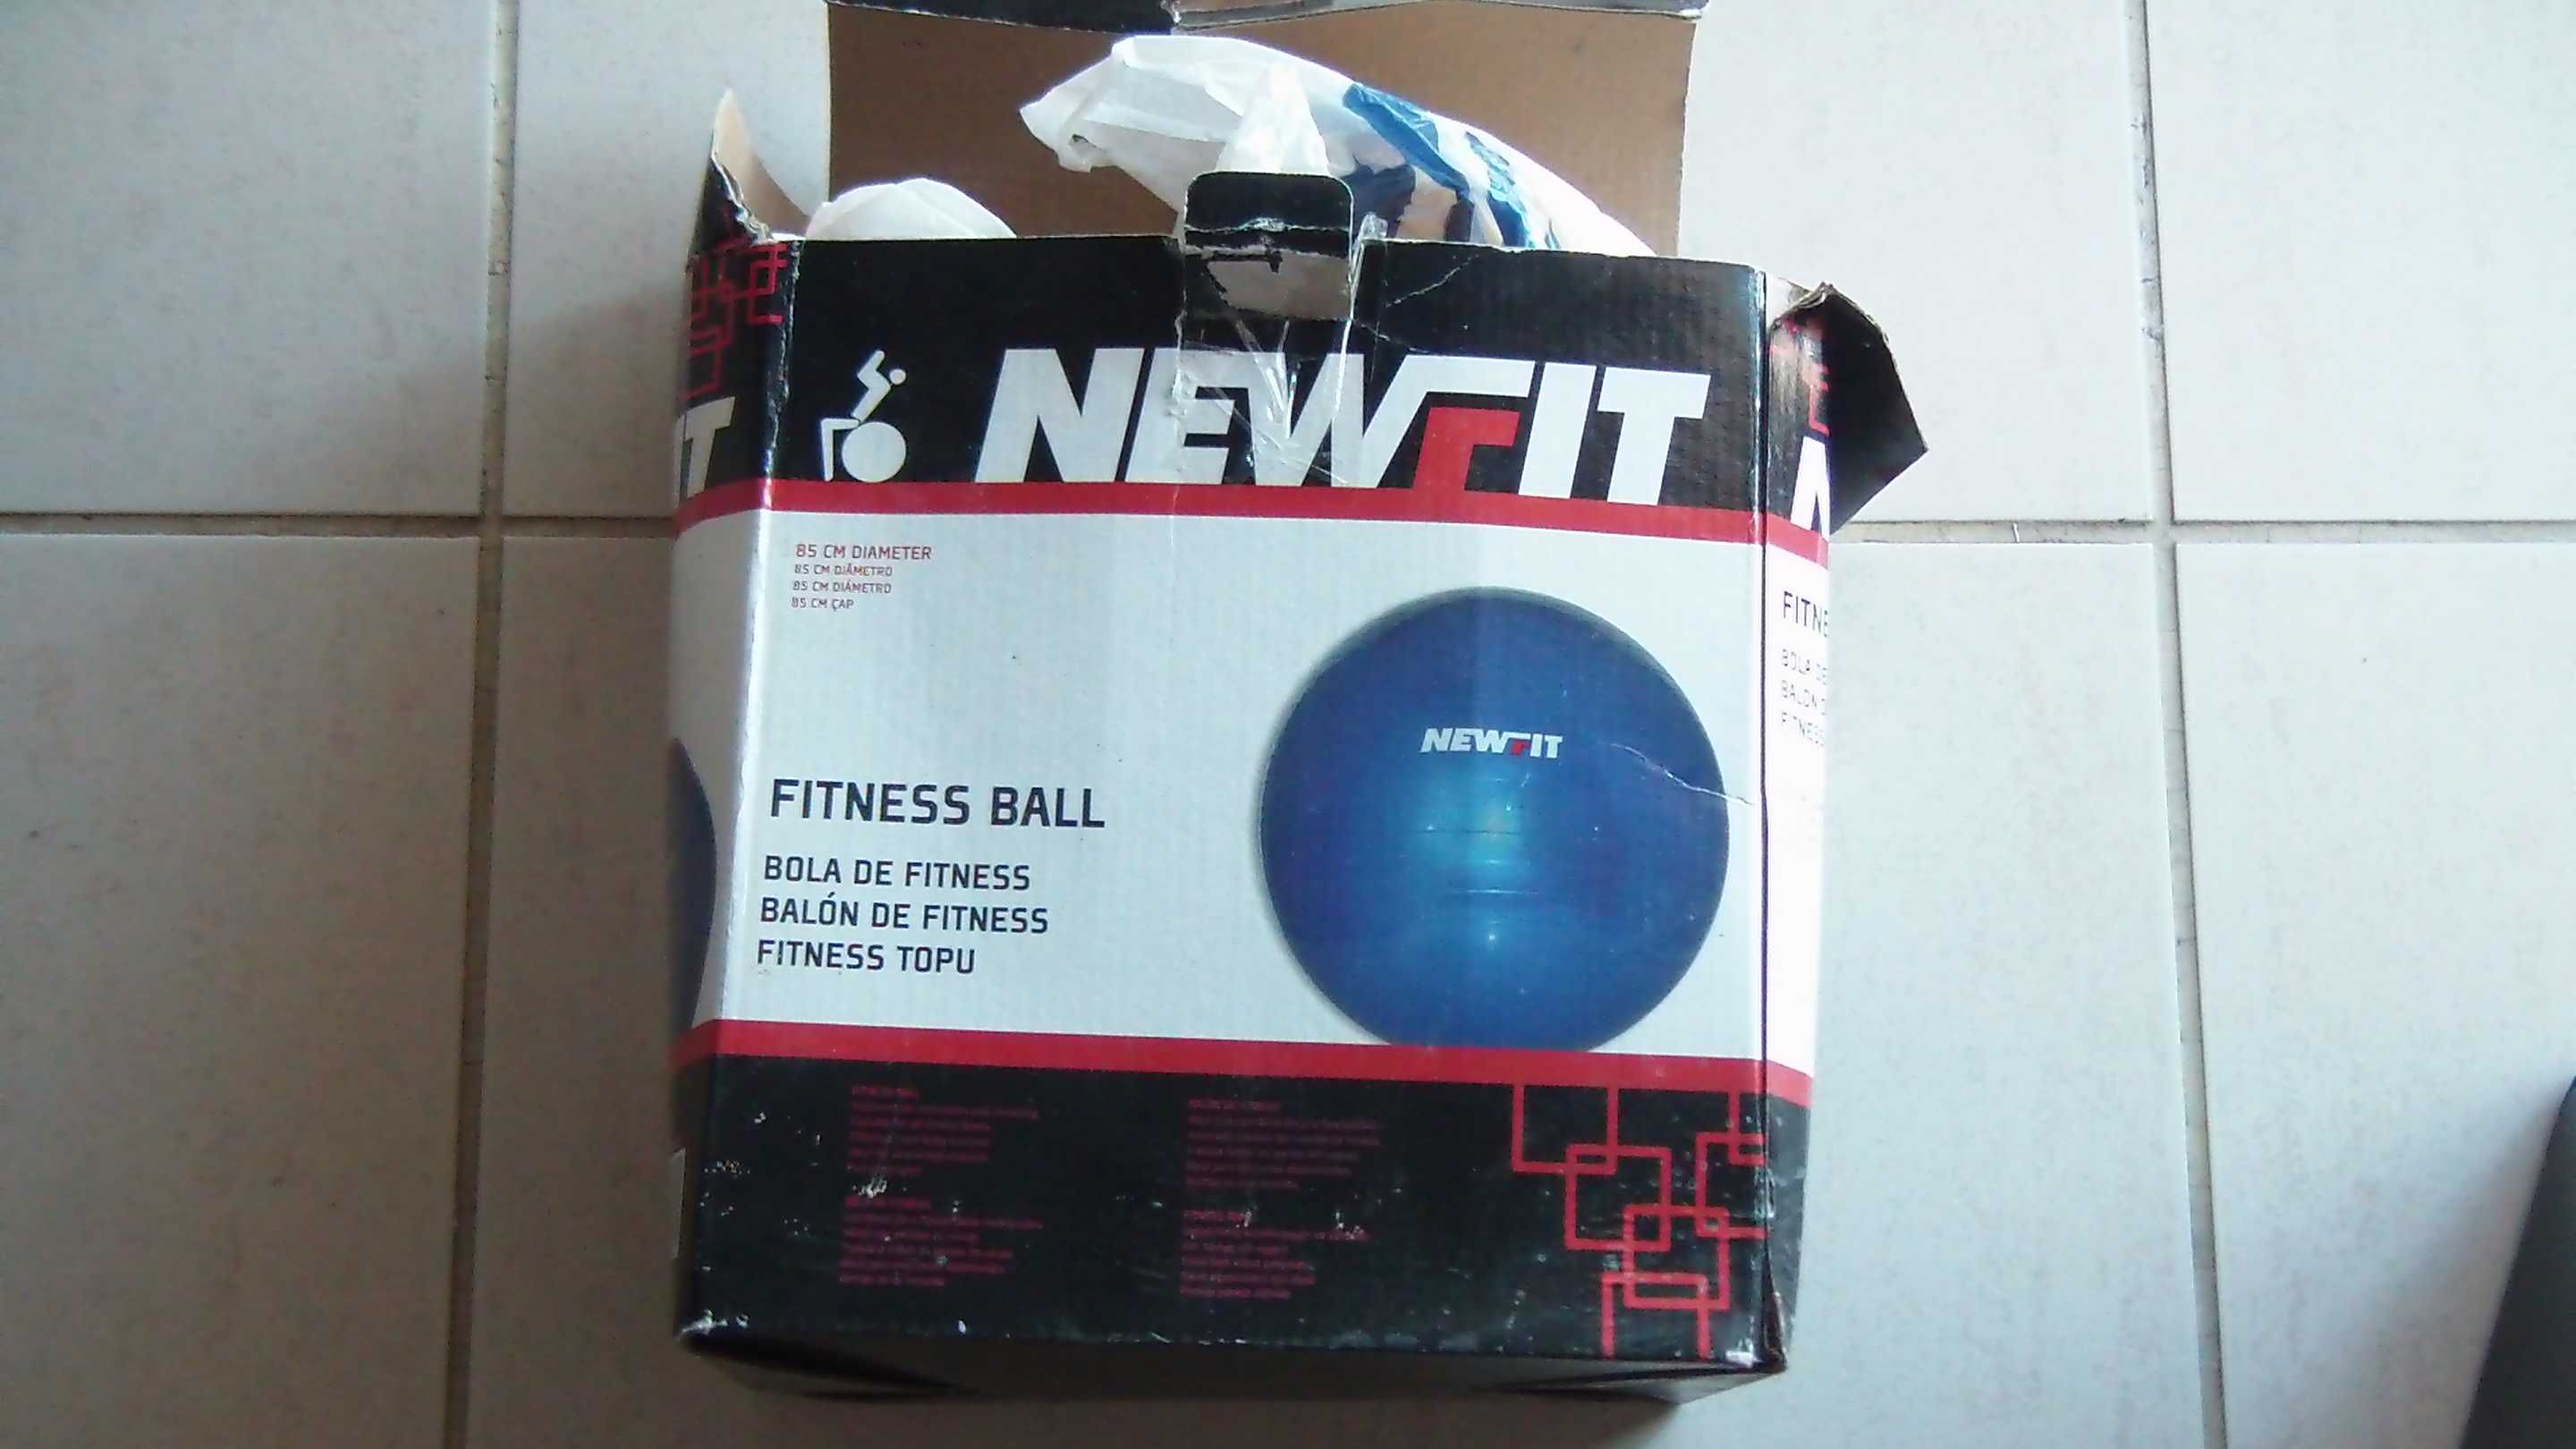 Bola de fitness 85cm diâmetro, da marca Newfit com bomba para encher